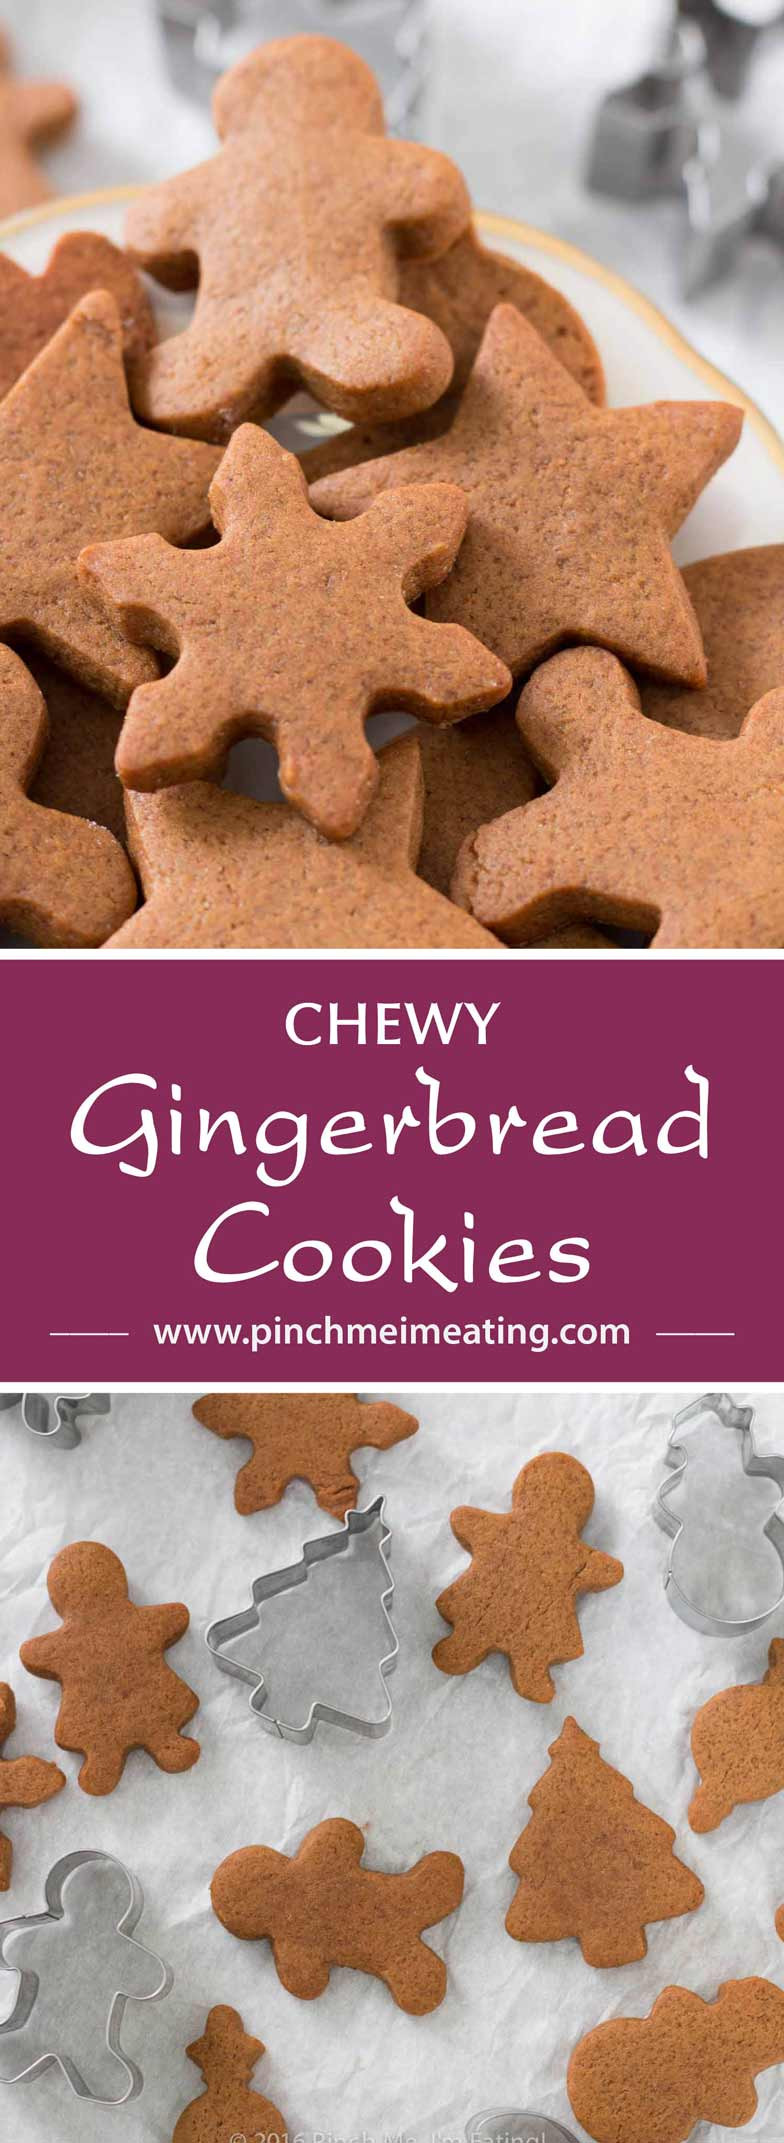 Chewy Gingerbread Cookies
 Chewy Gingerbread Cookies